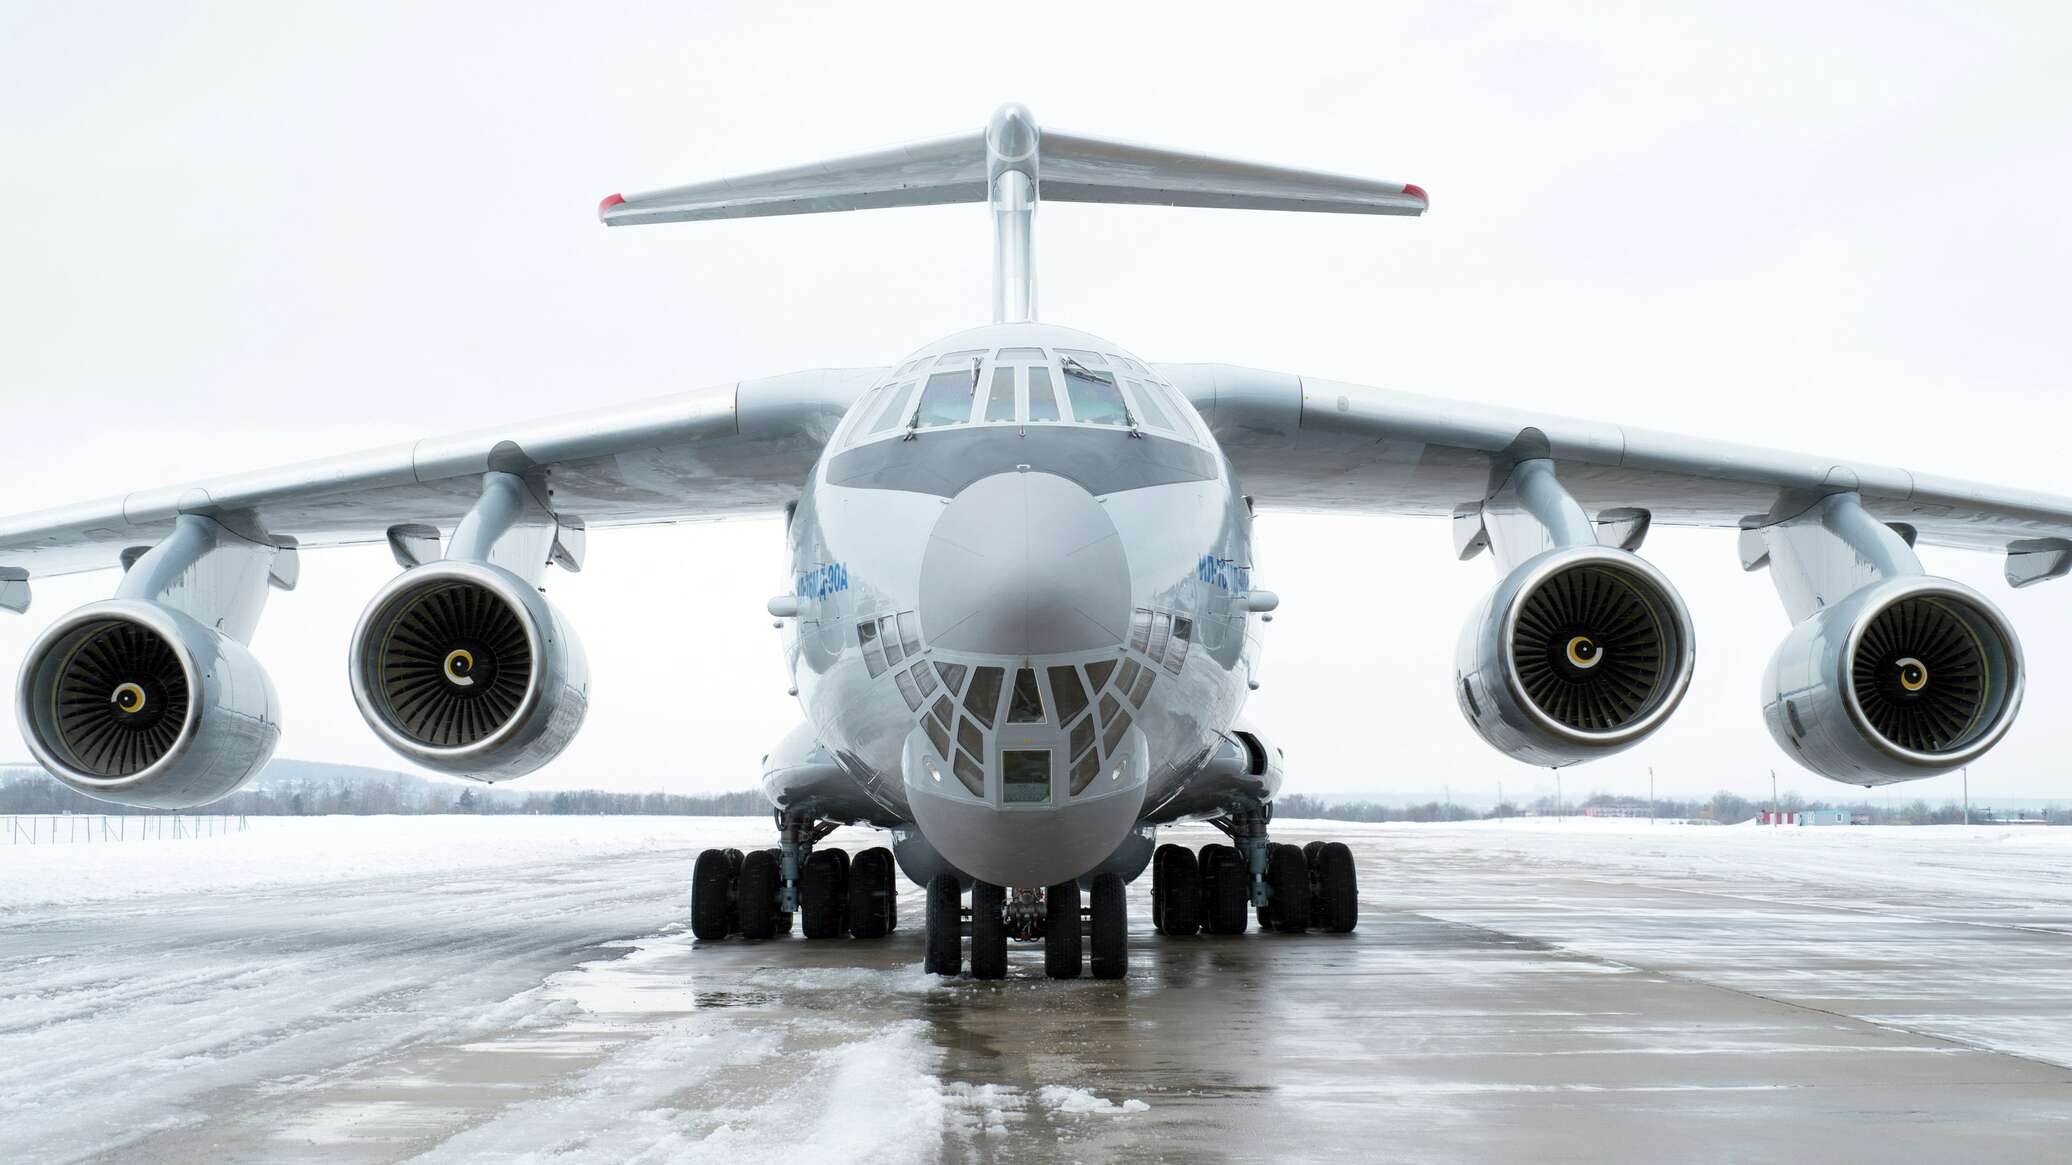 تعلن شركة Rosoboronexport عن طلبيات قياسية لطائرات Il-76MD-90A في معرض دبي للطيران